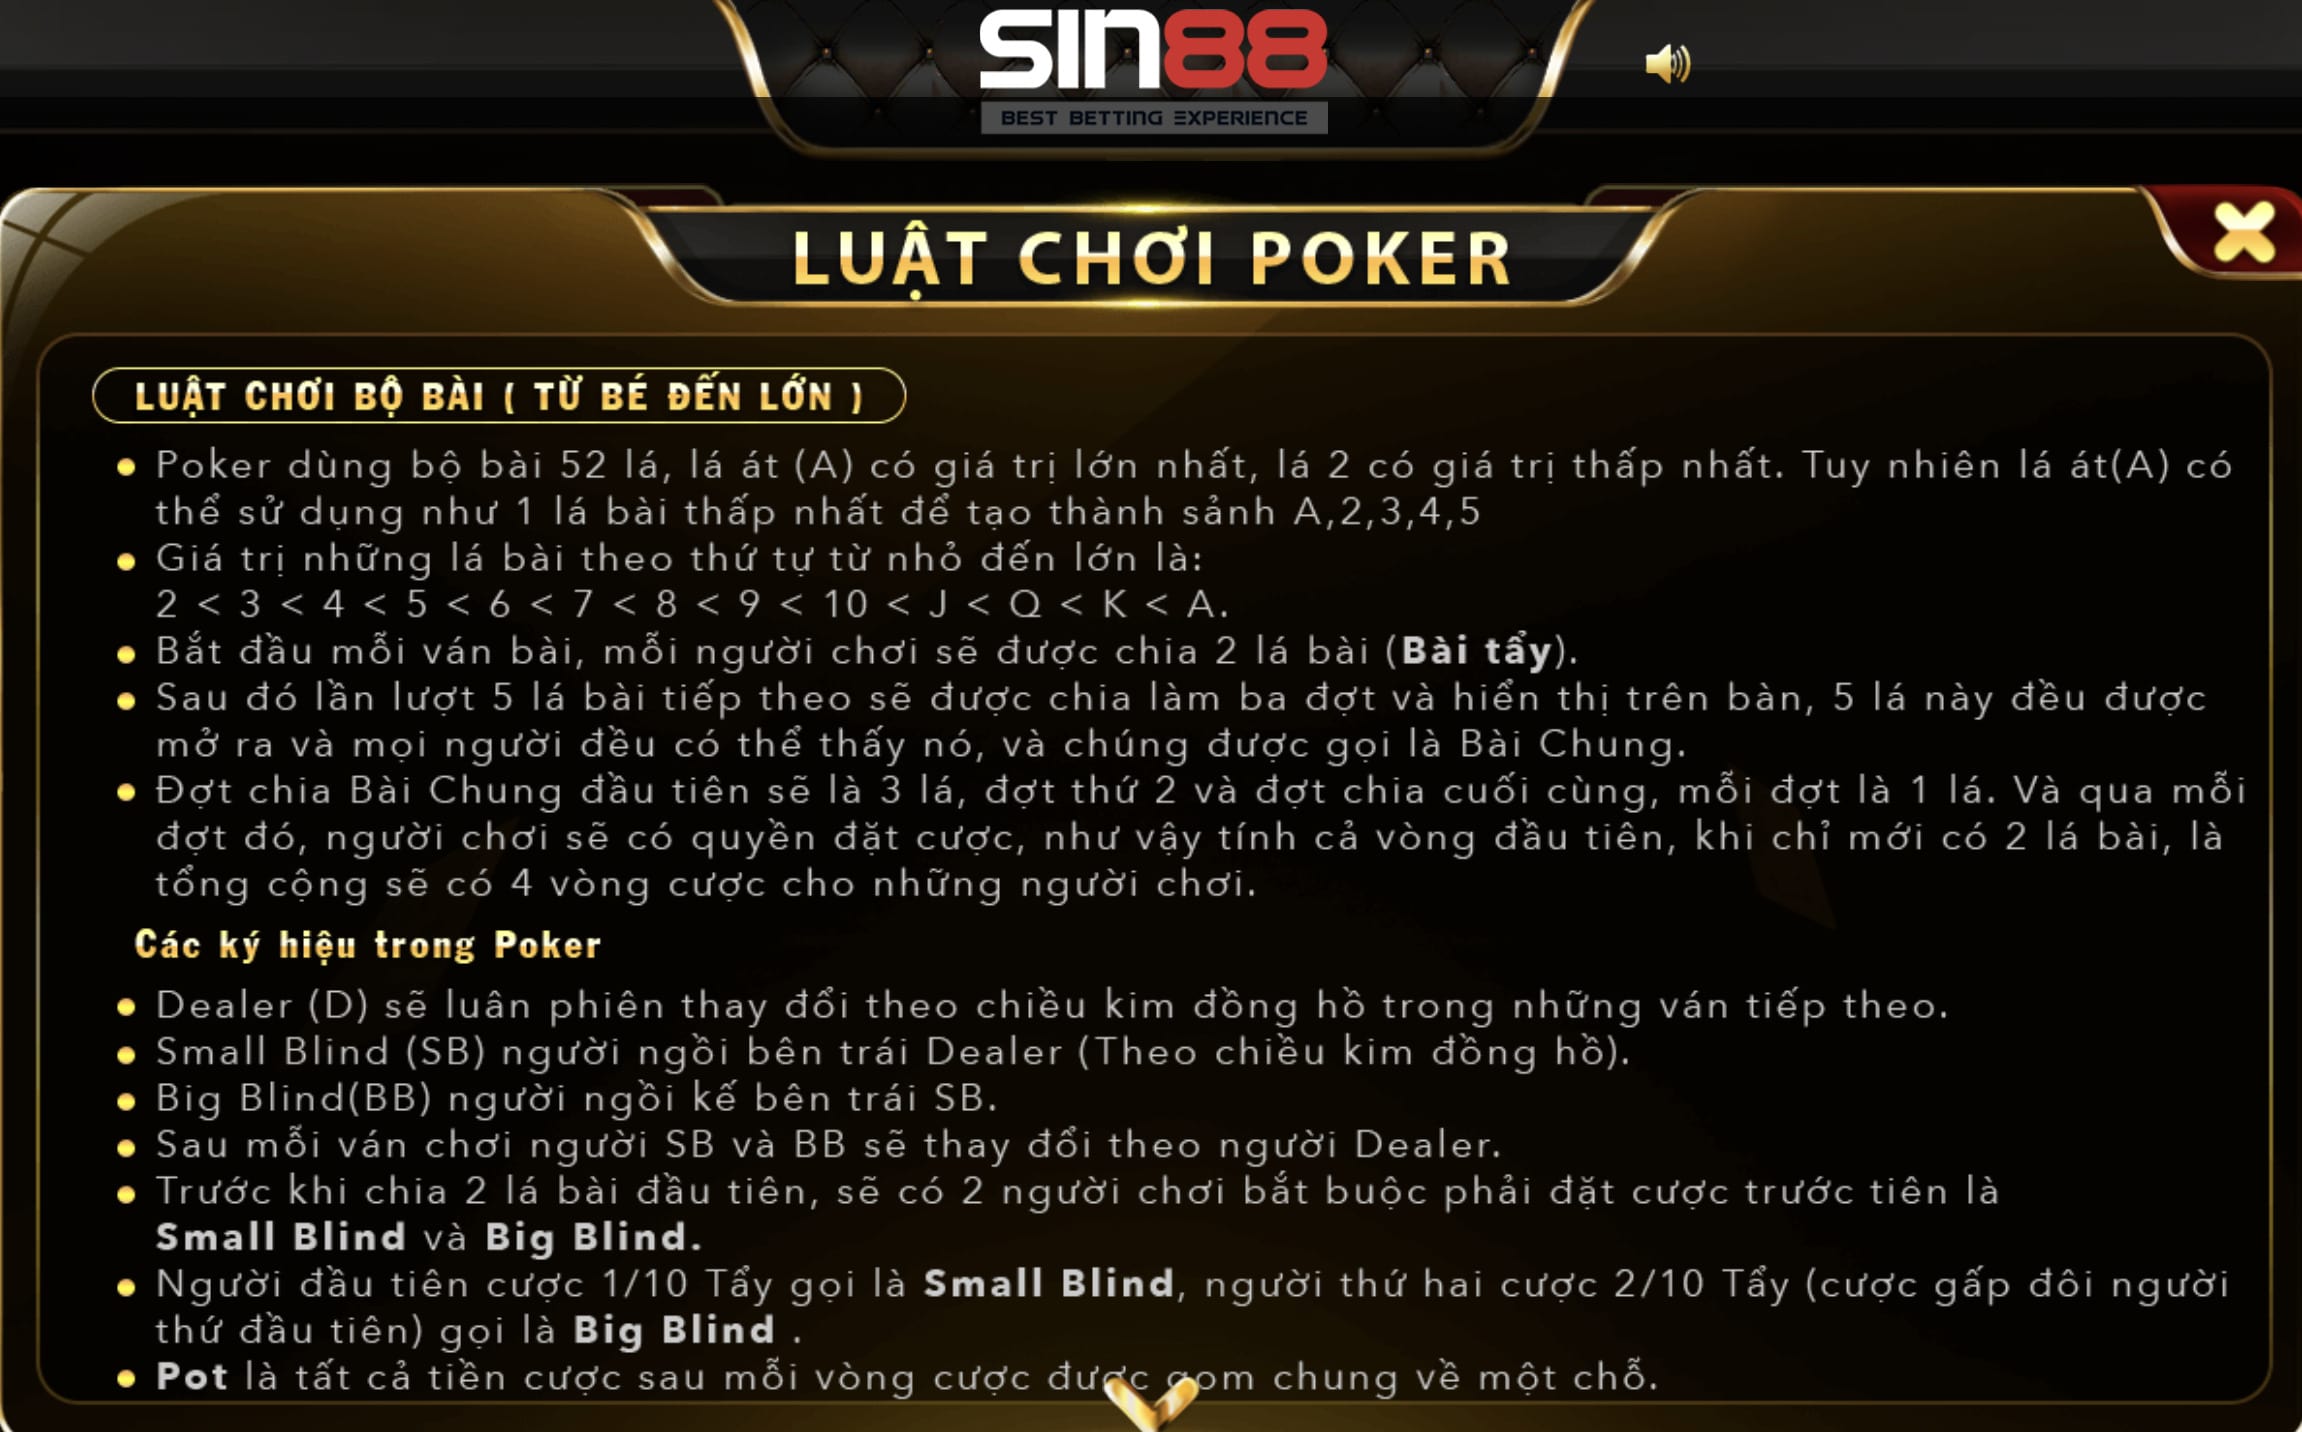 Luật chơi và cách chơi poker Sin88 